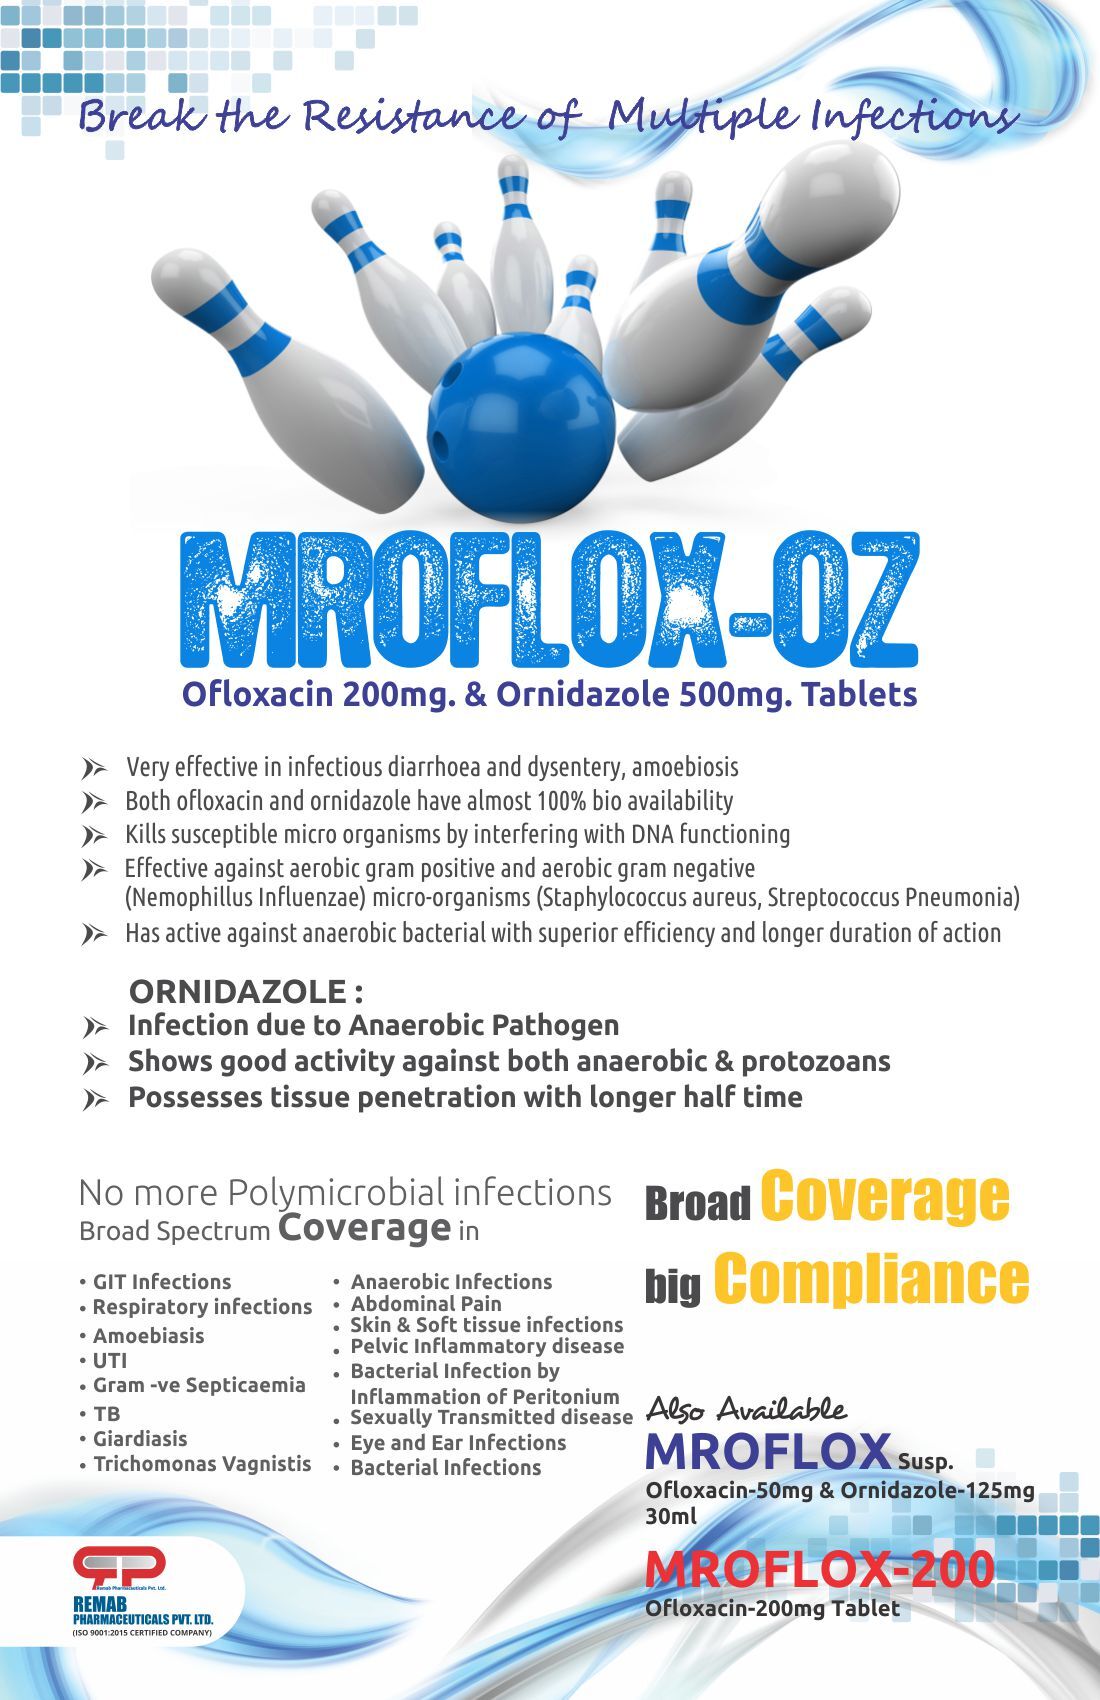 Ofloxacin 200 MG Tablets IP